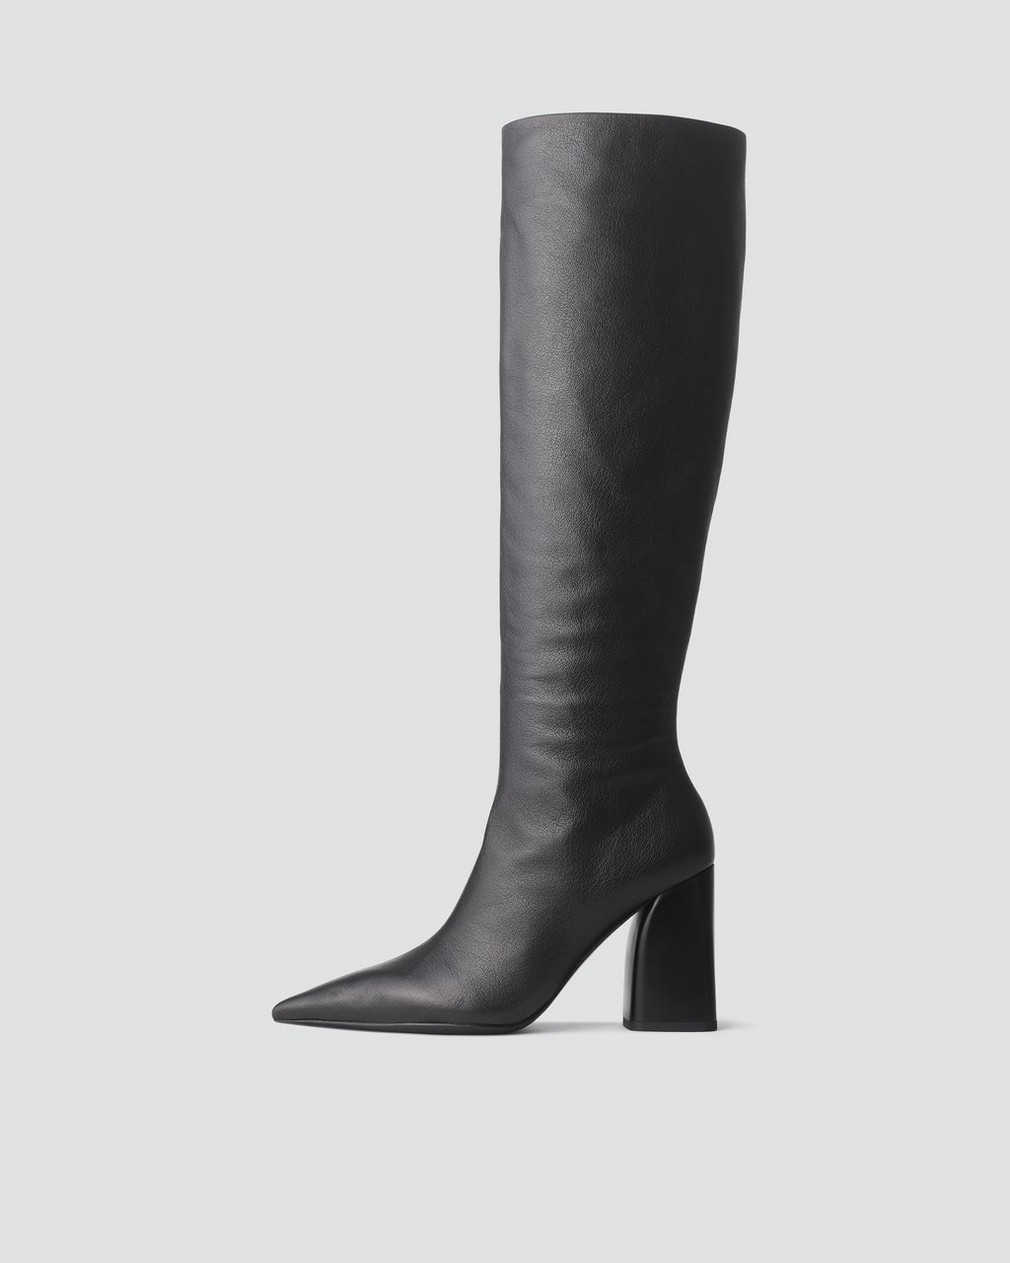 Viva Knee High Boot - Leather